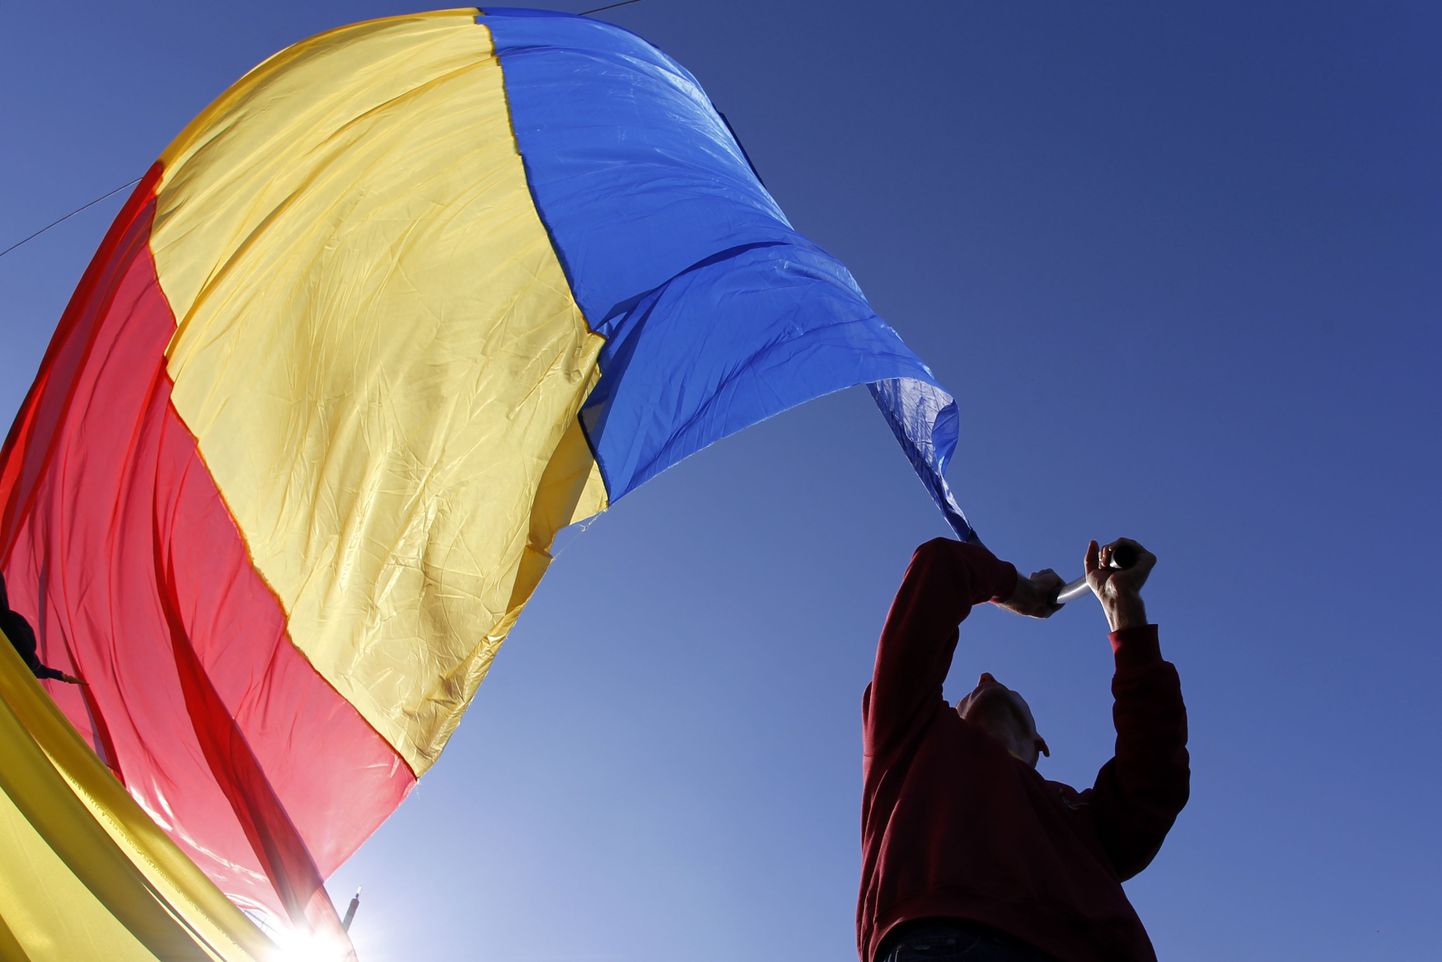 Rumeenia lipp